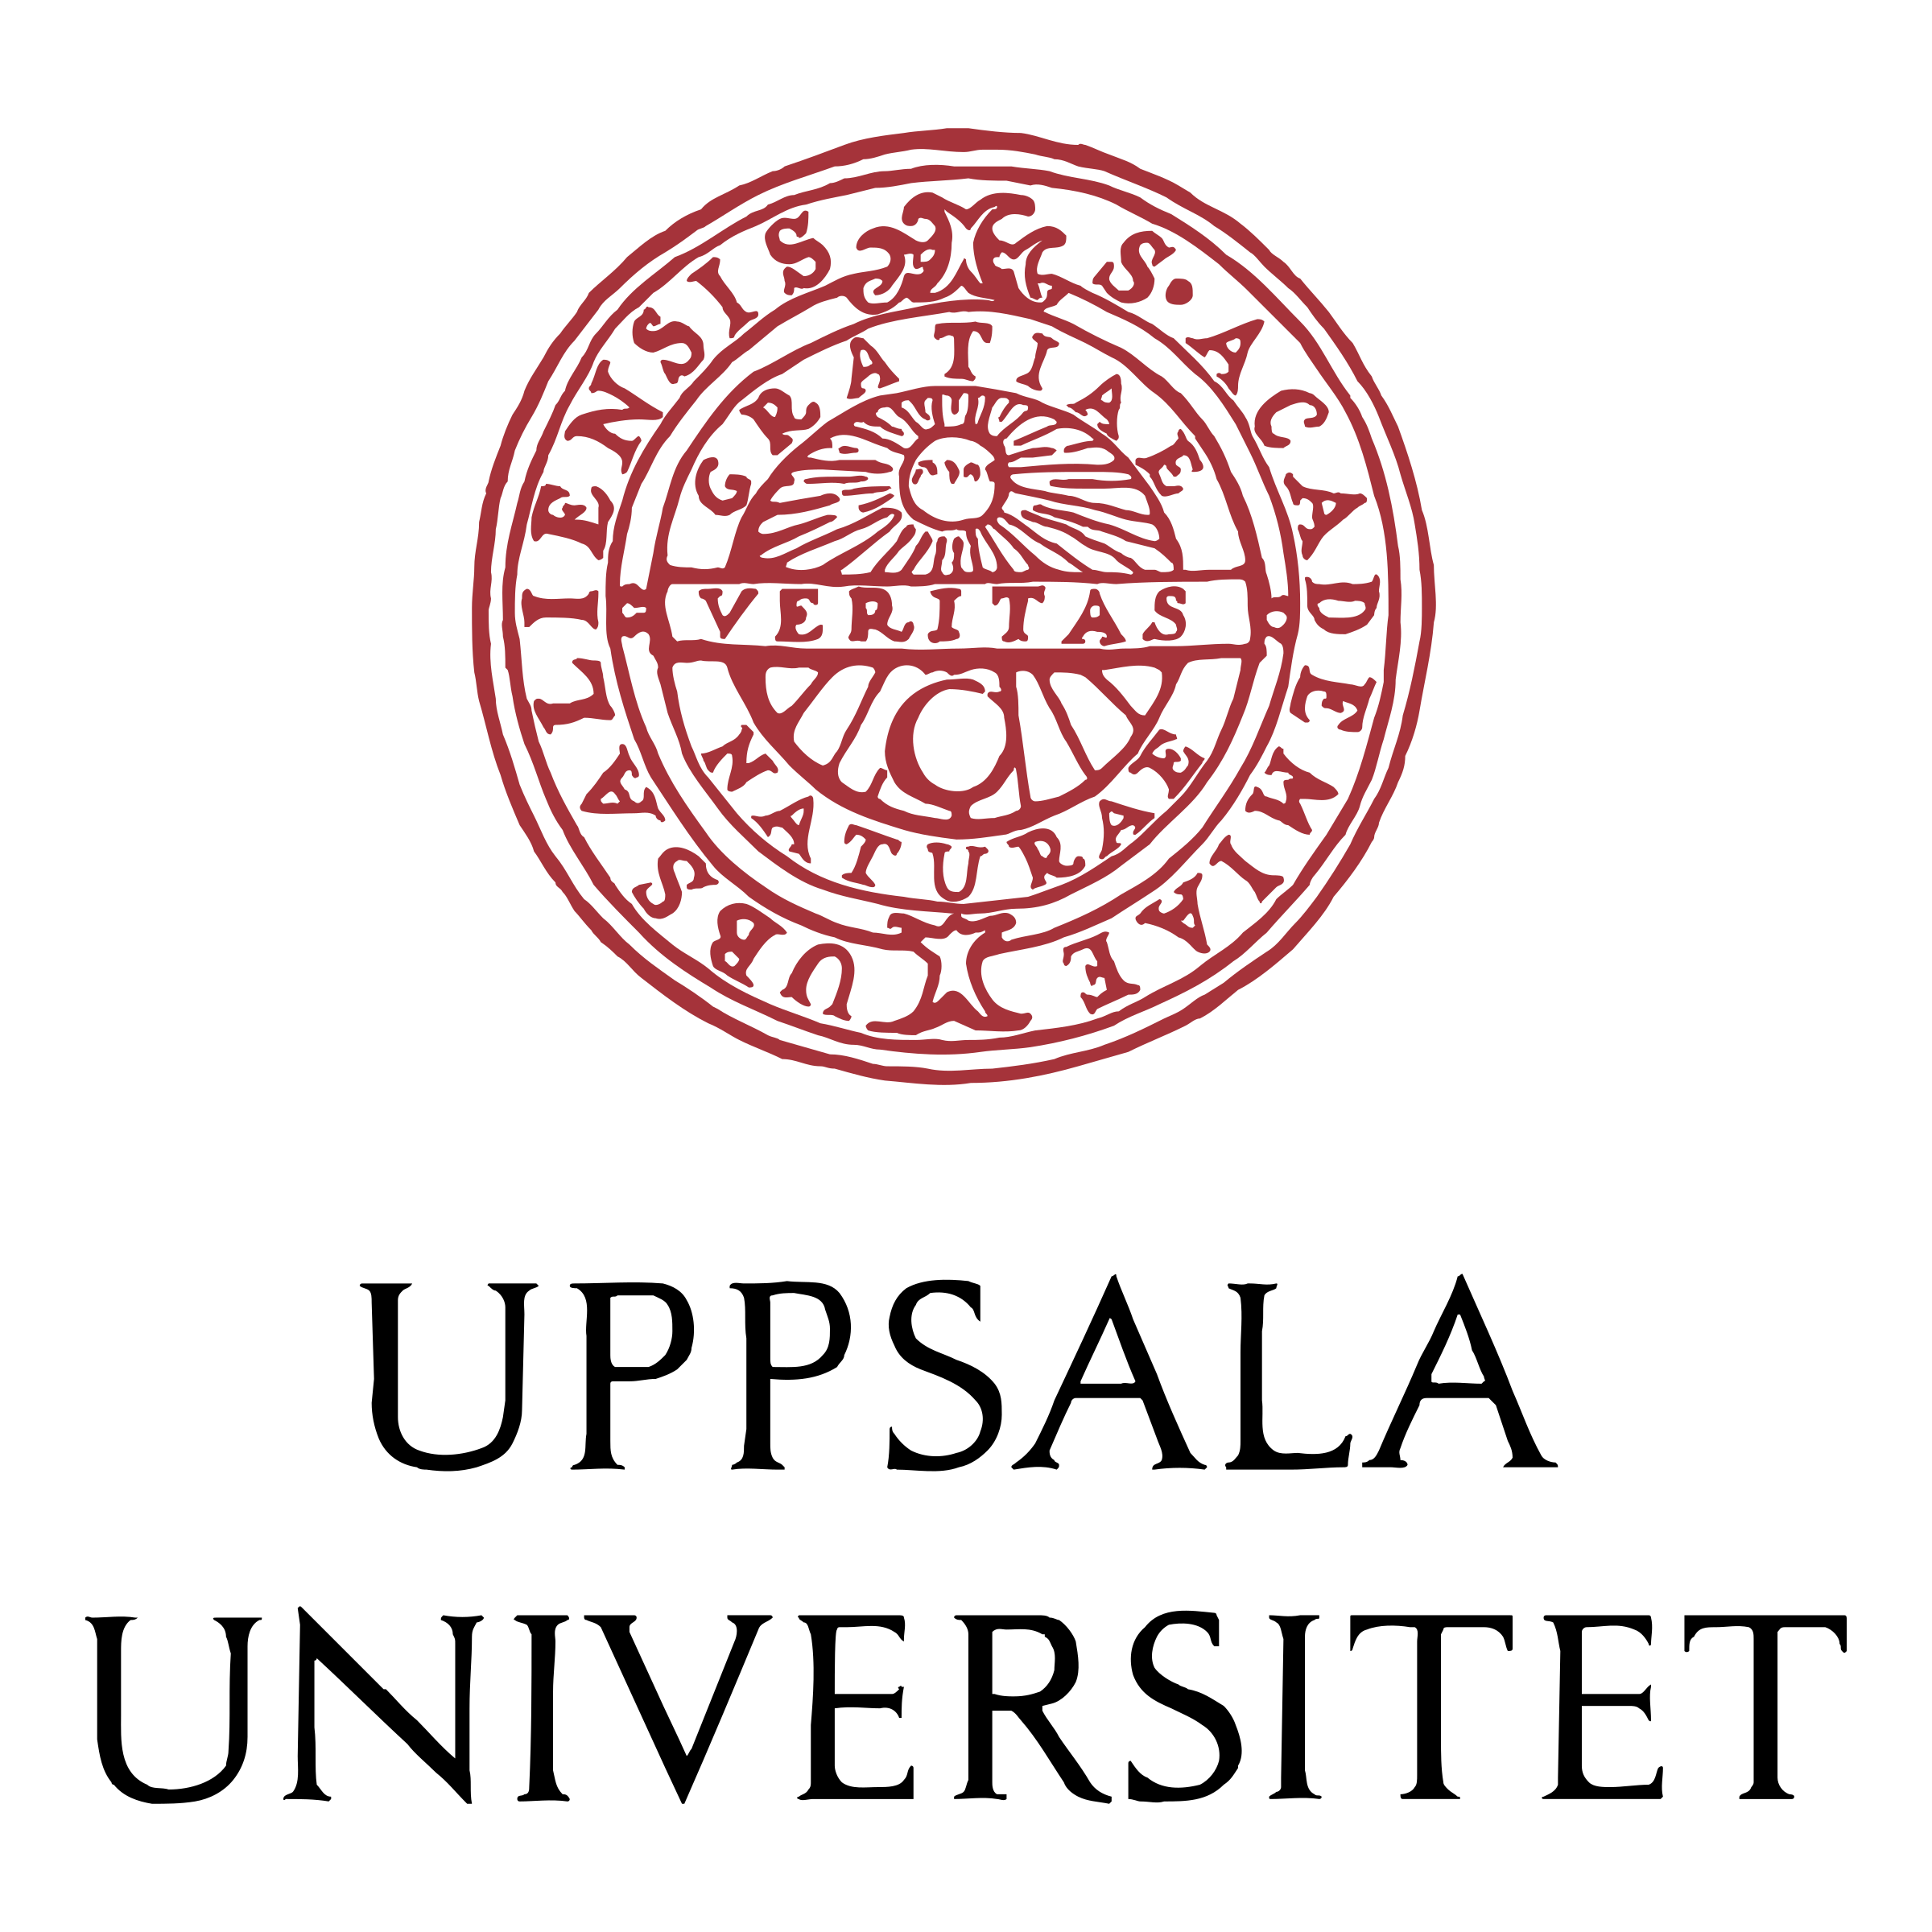 uppsala-universitet-logo-png-transparent